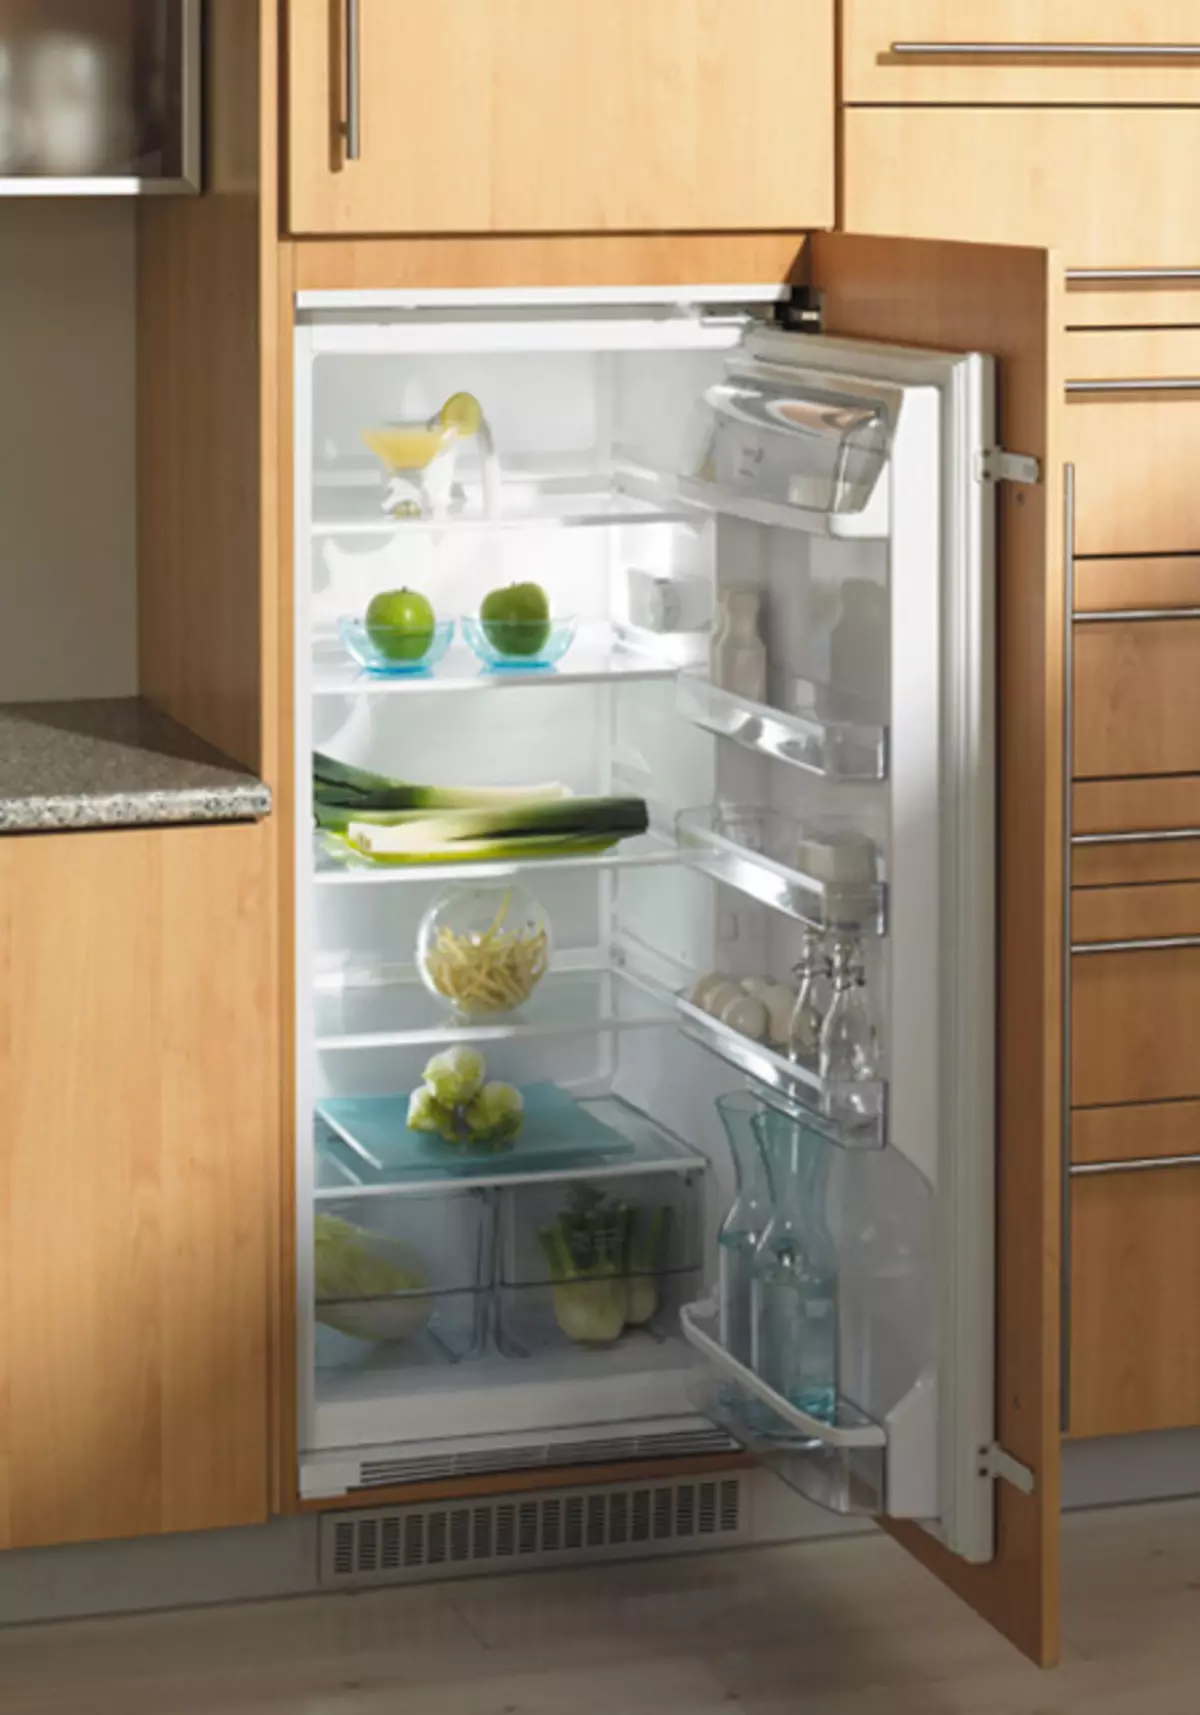 встройка холодильника в шкаф